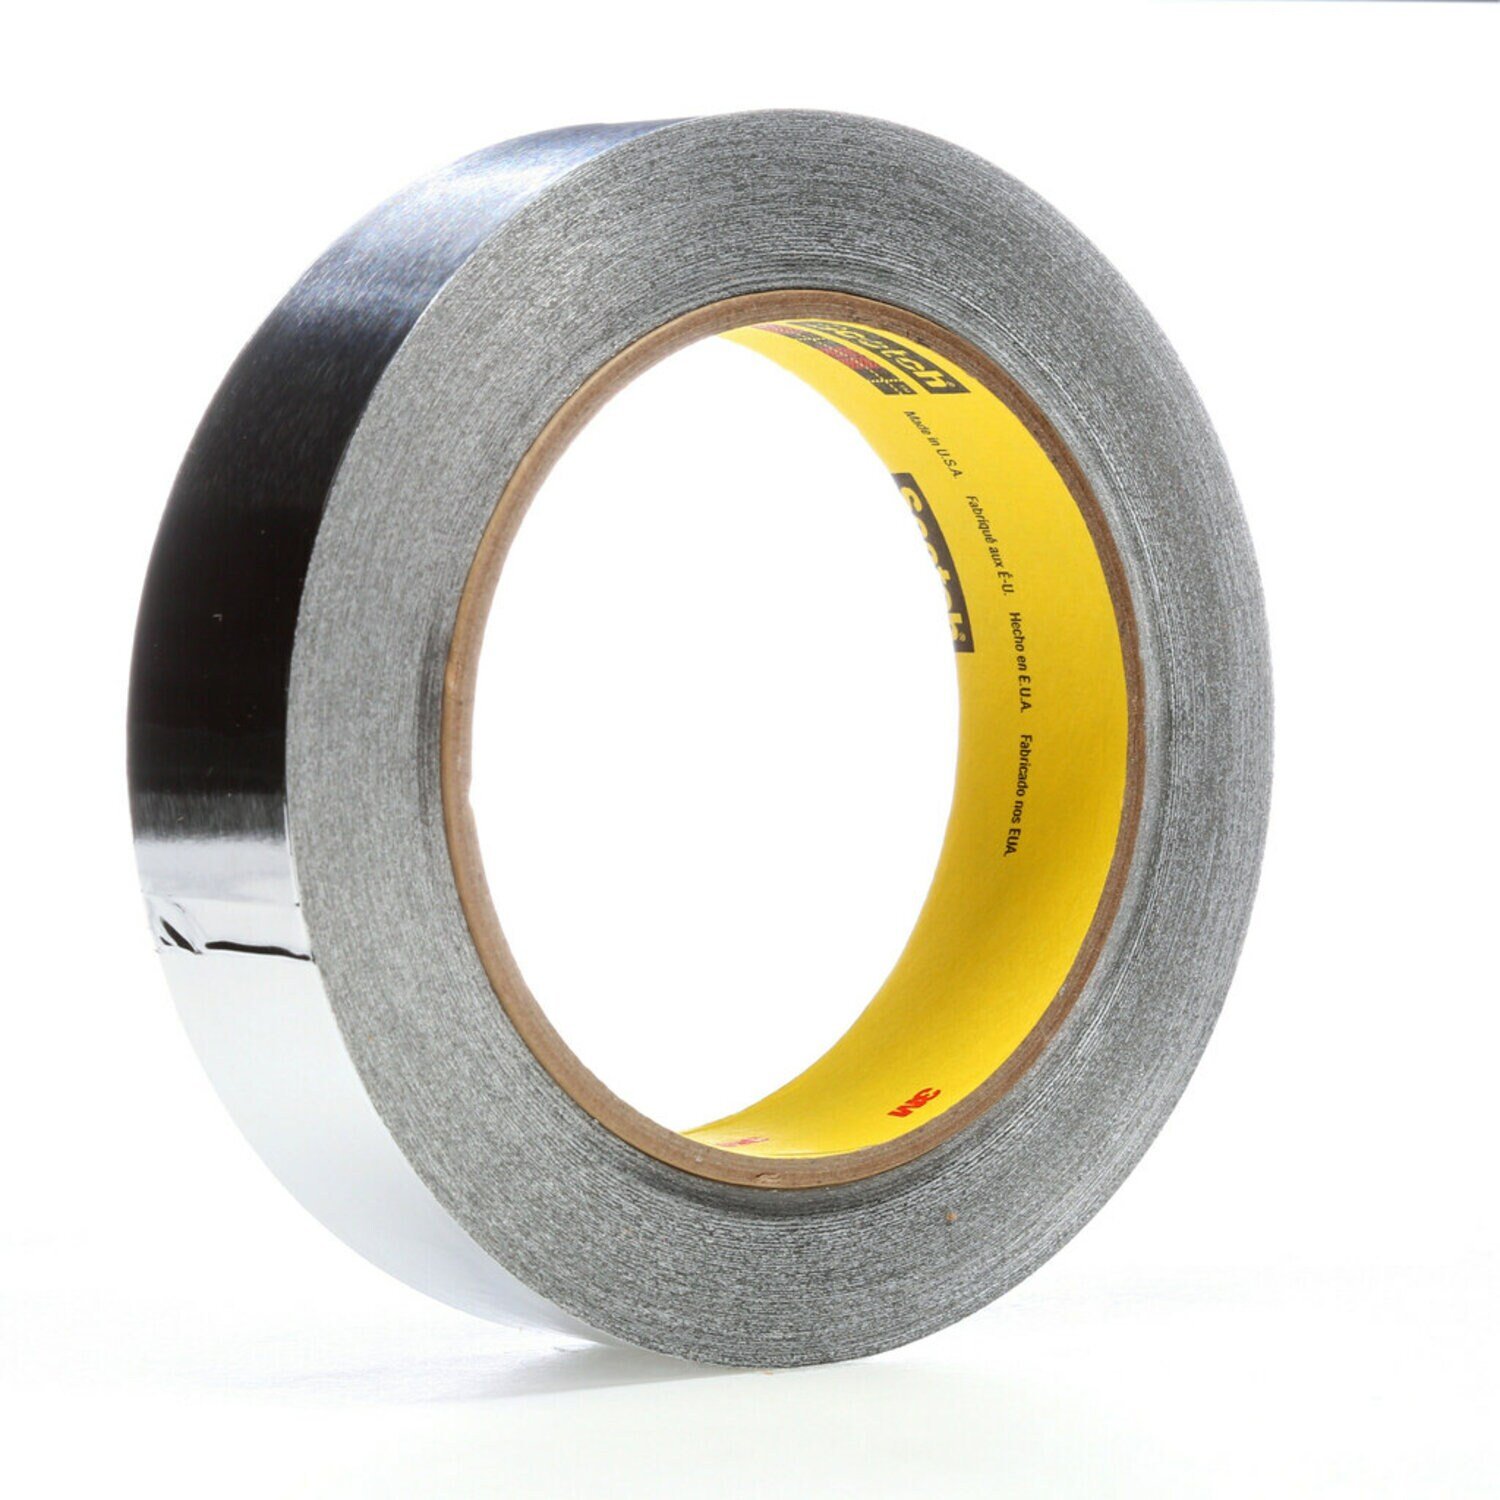 7100228331 - 3M High Temperature Aluminum Foil Tape 433, Silver, 2 in x 60 yd, 3.6 mil, 5 Rolls/Case